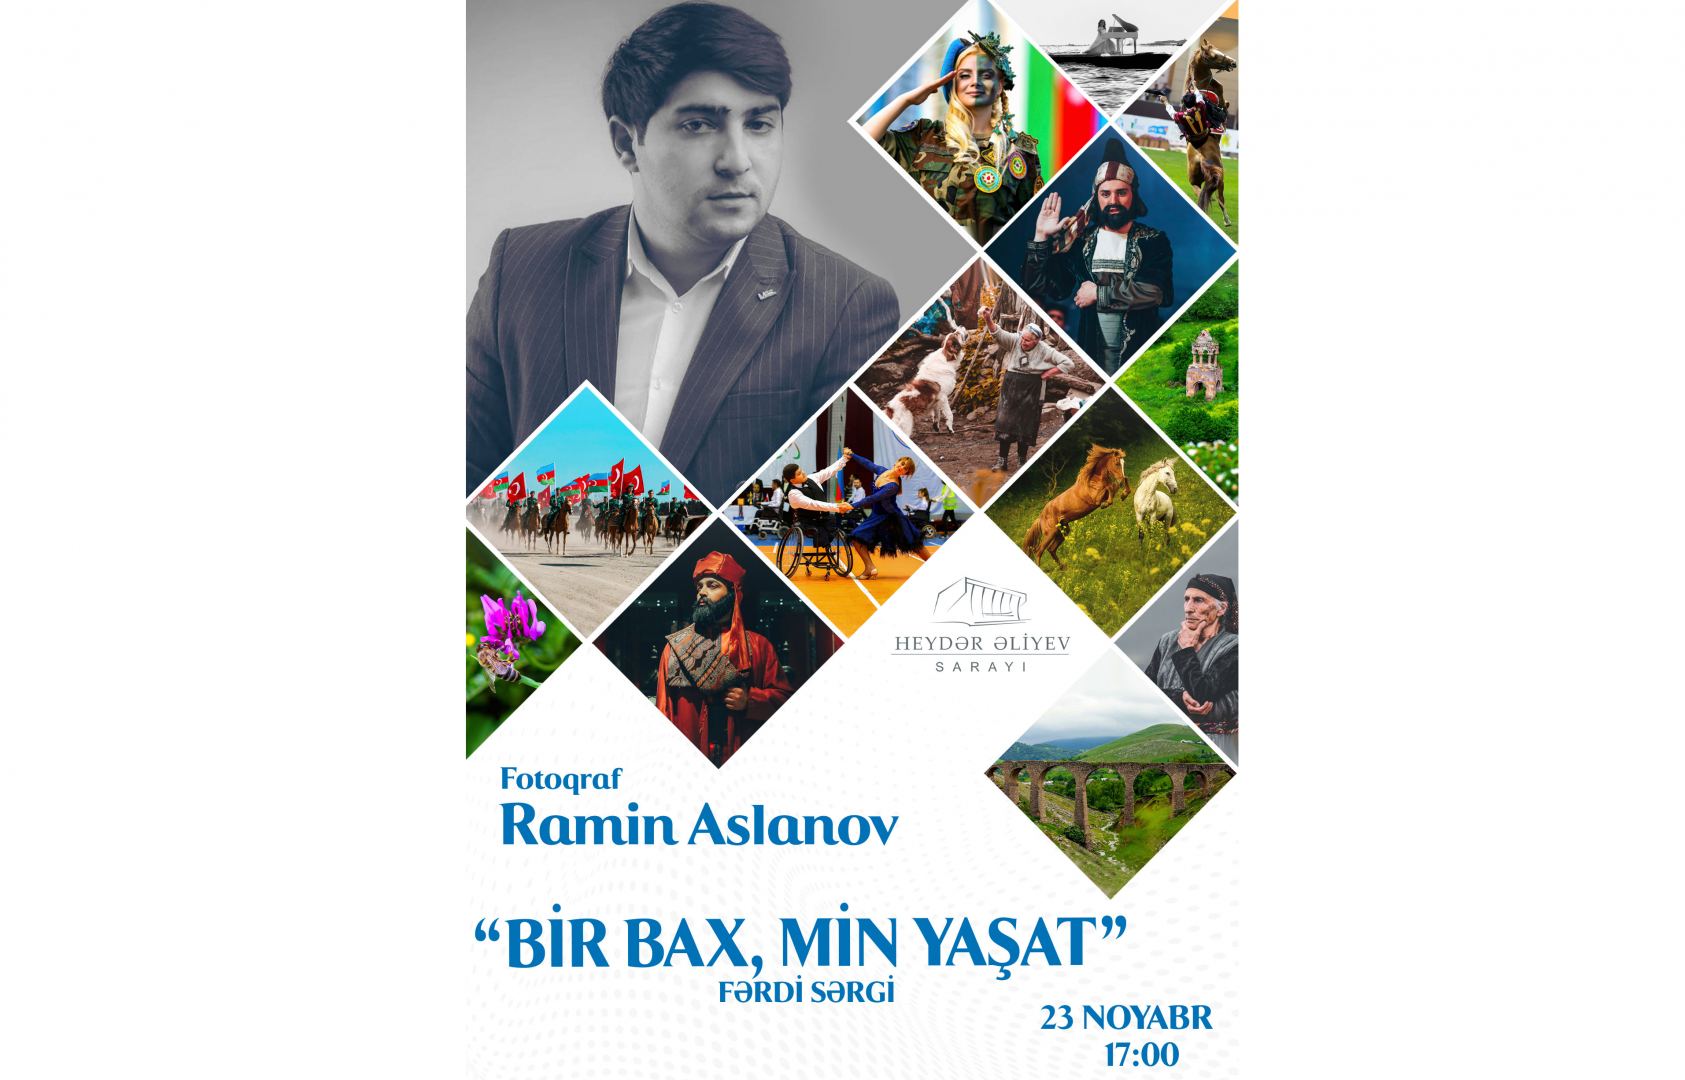 Во Дворце Гейдара Алиева откроется экспозиция "Bir Bax, Min Yaşat", прозвучат композиции Джахангира Джахангирова